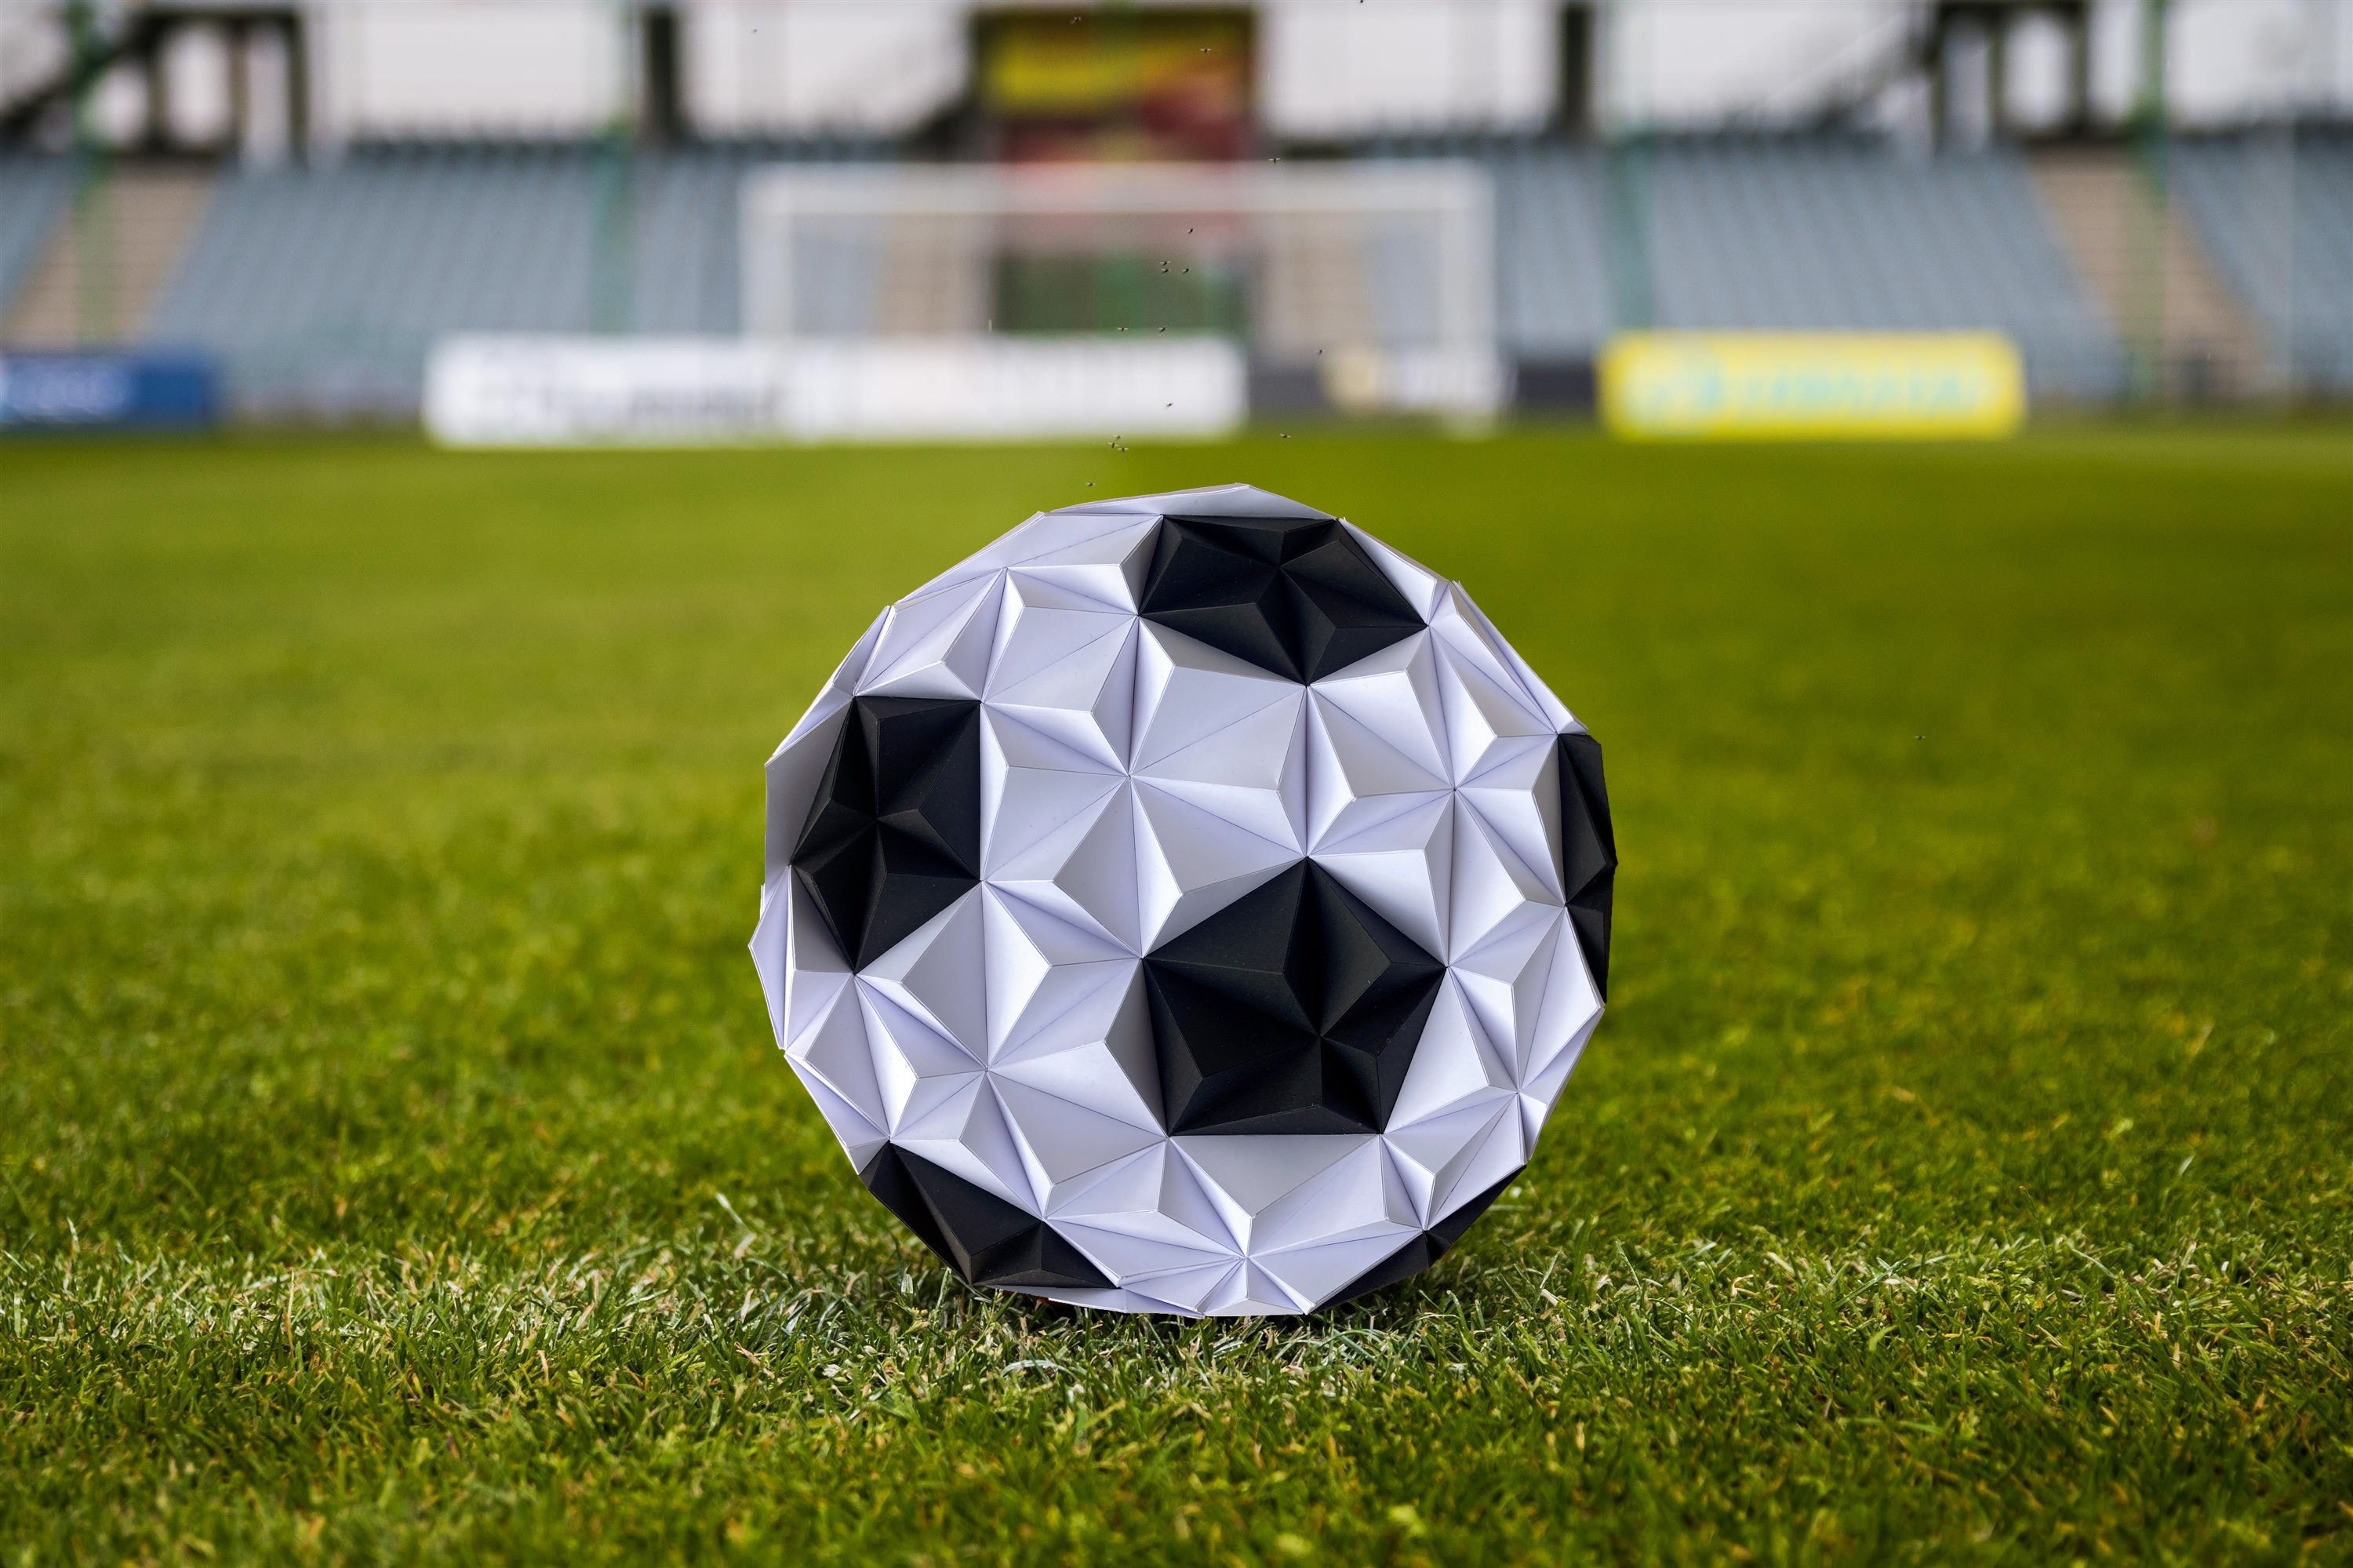 Coupe en forme de ballon de foot avec gravure verre personnalisée.